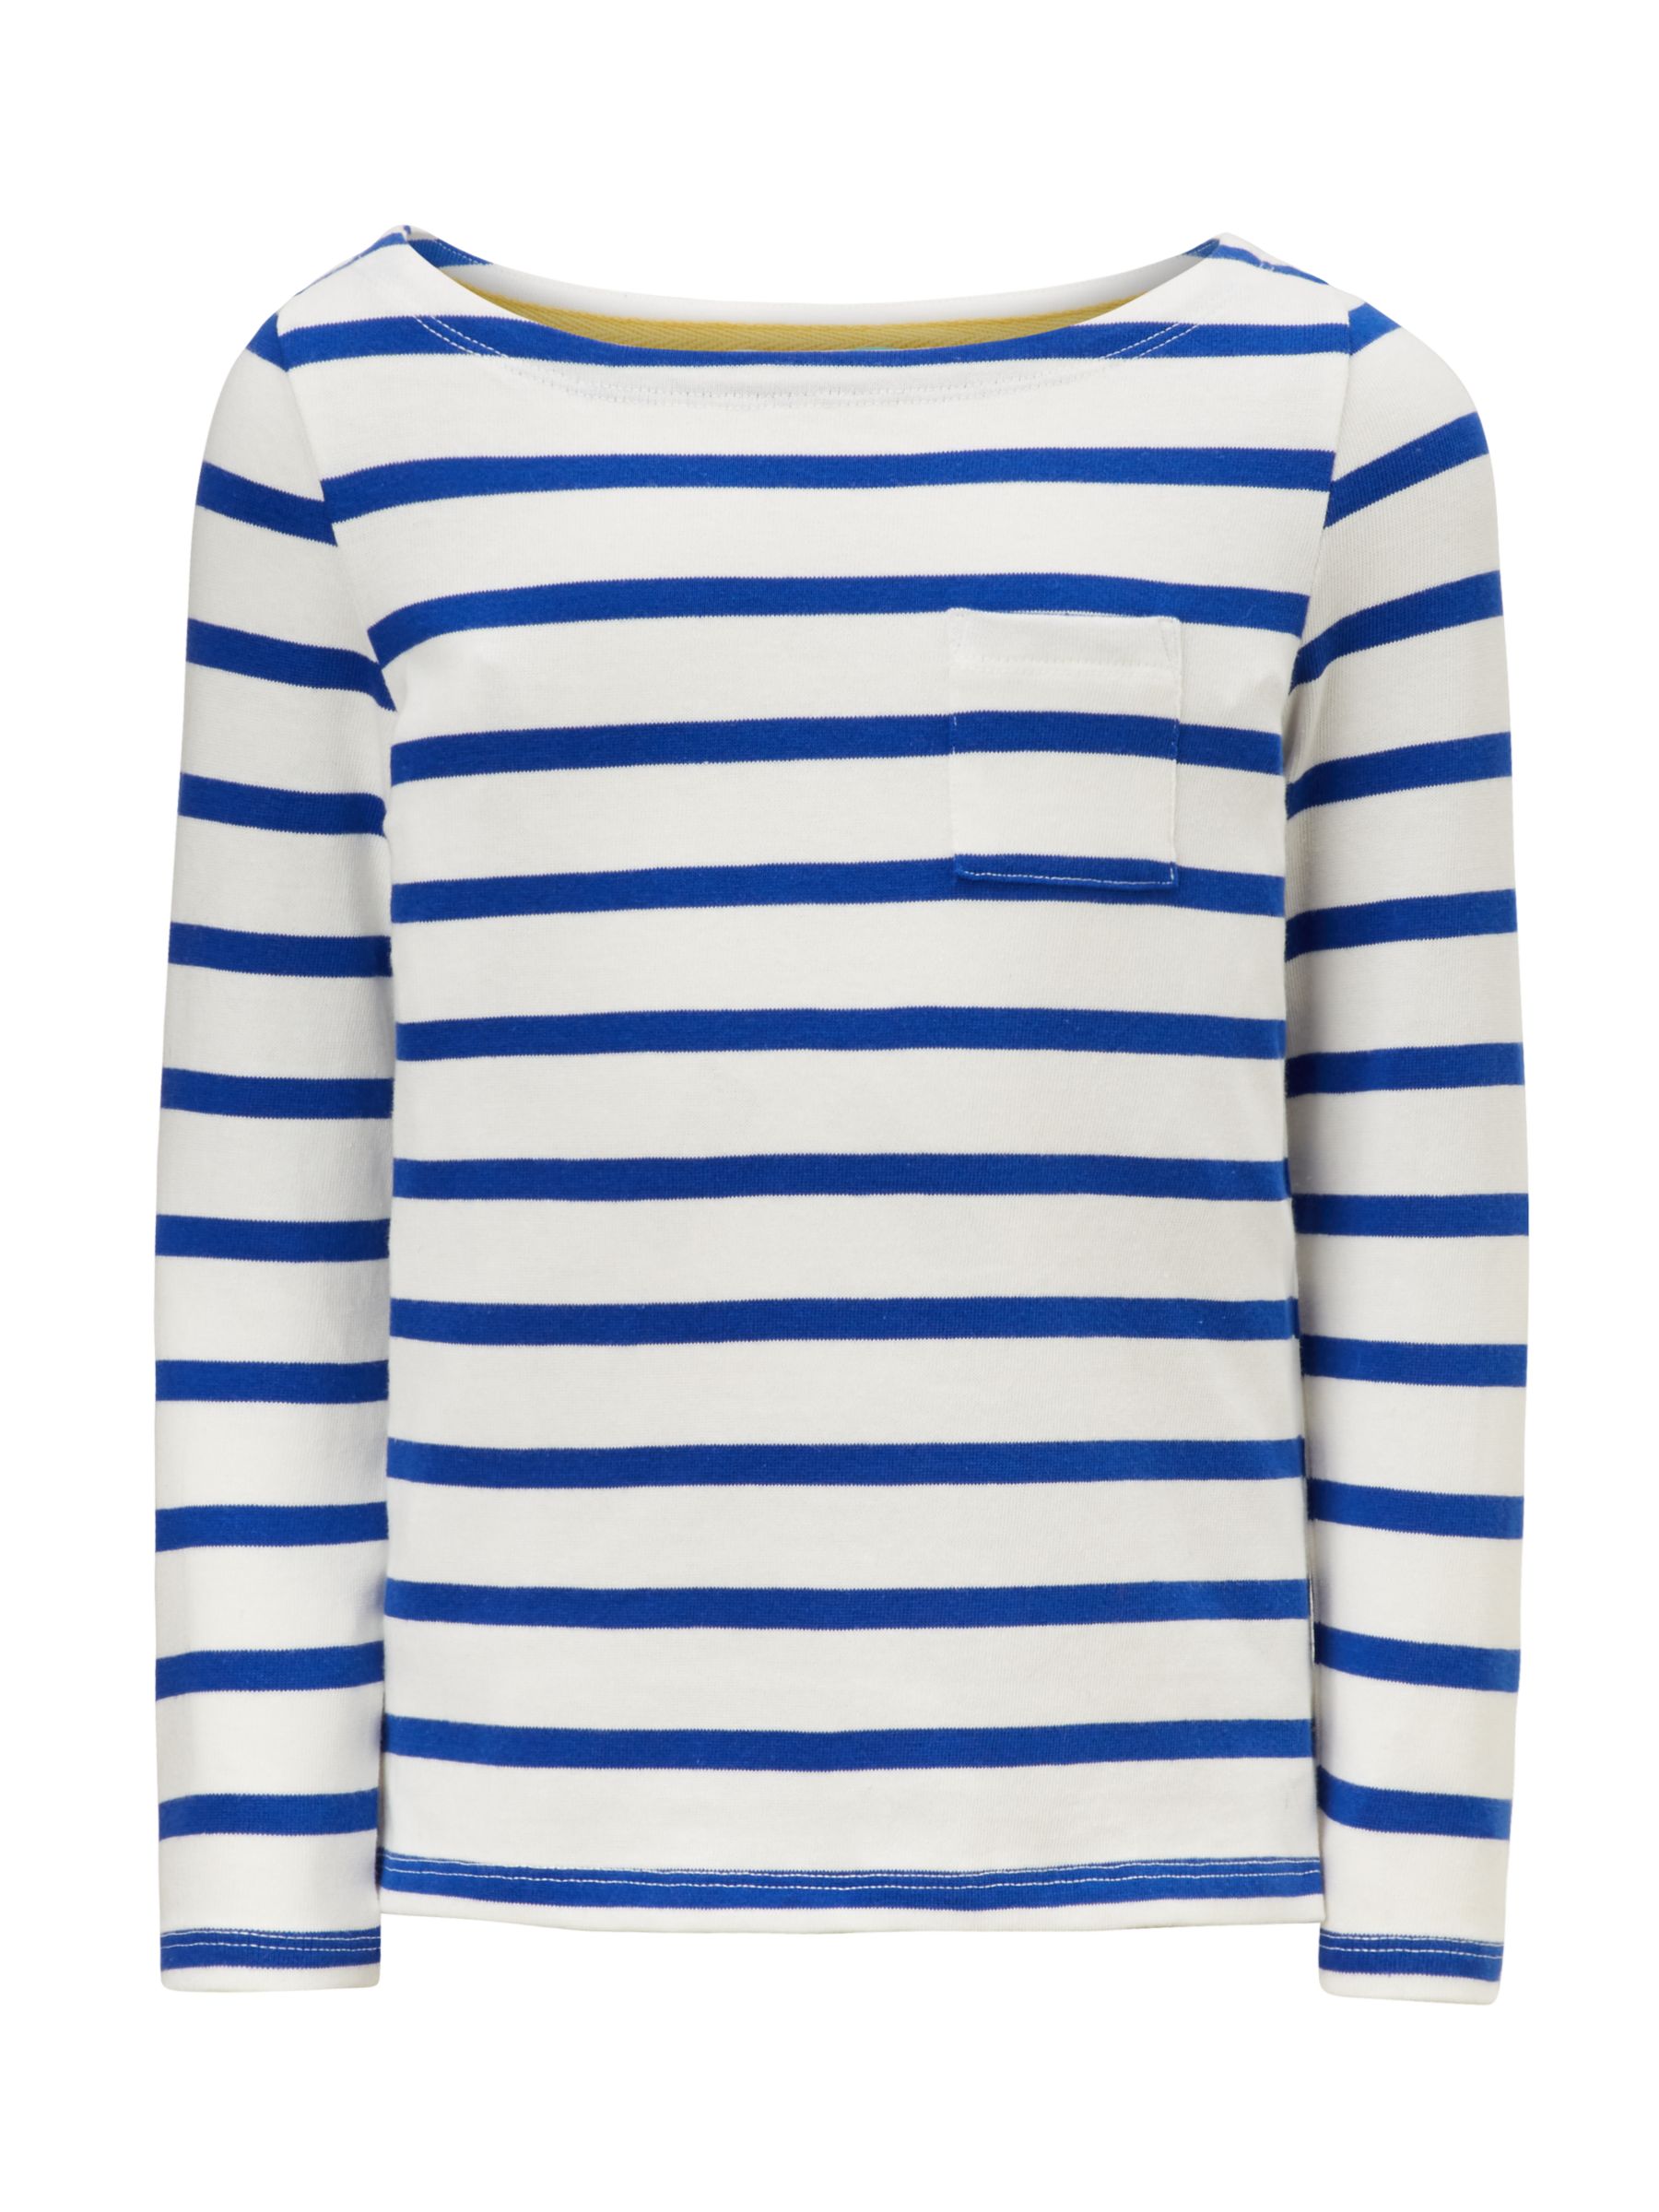 John Lewis & Partners Girls' Breton Stripe T-Shirt